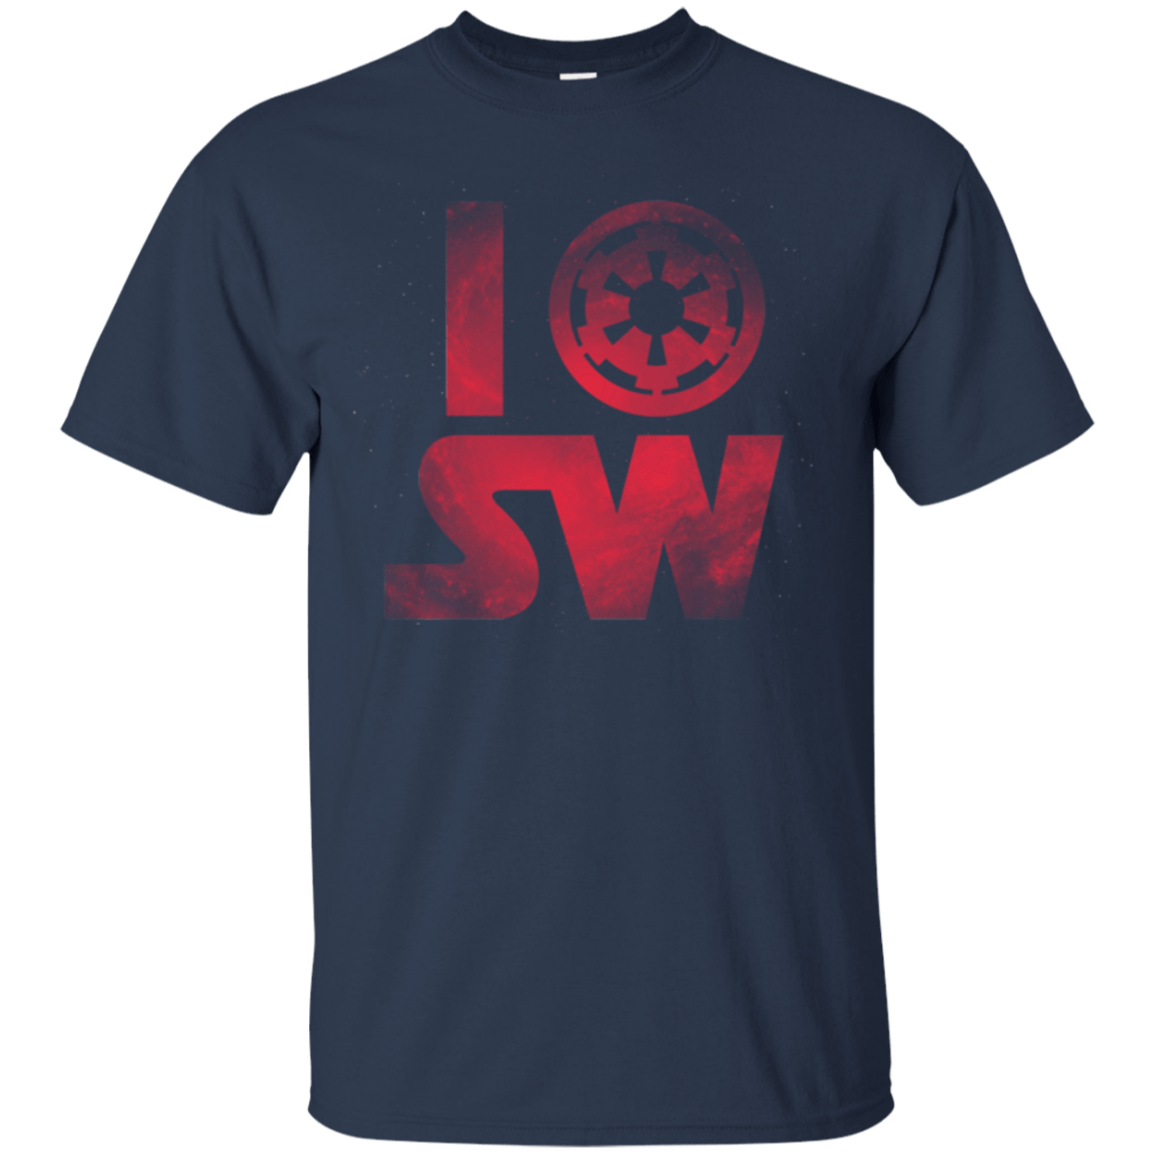 T-Shirts Navy / Small I Empire SW T-Shirt